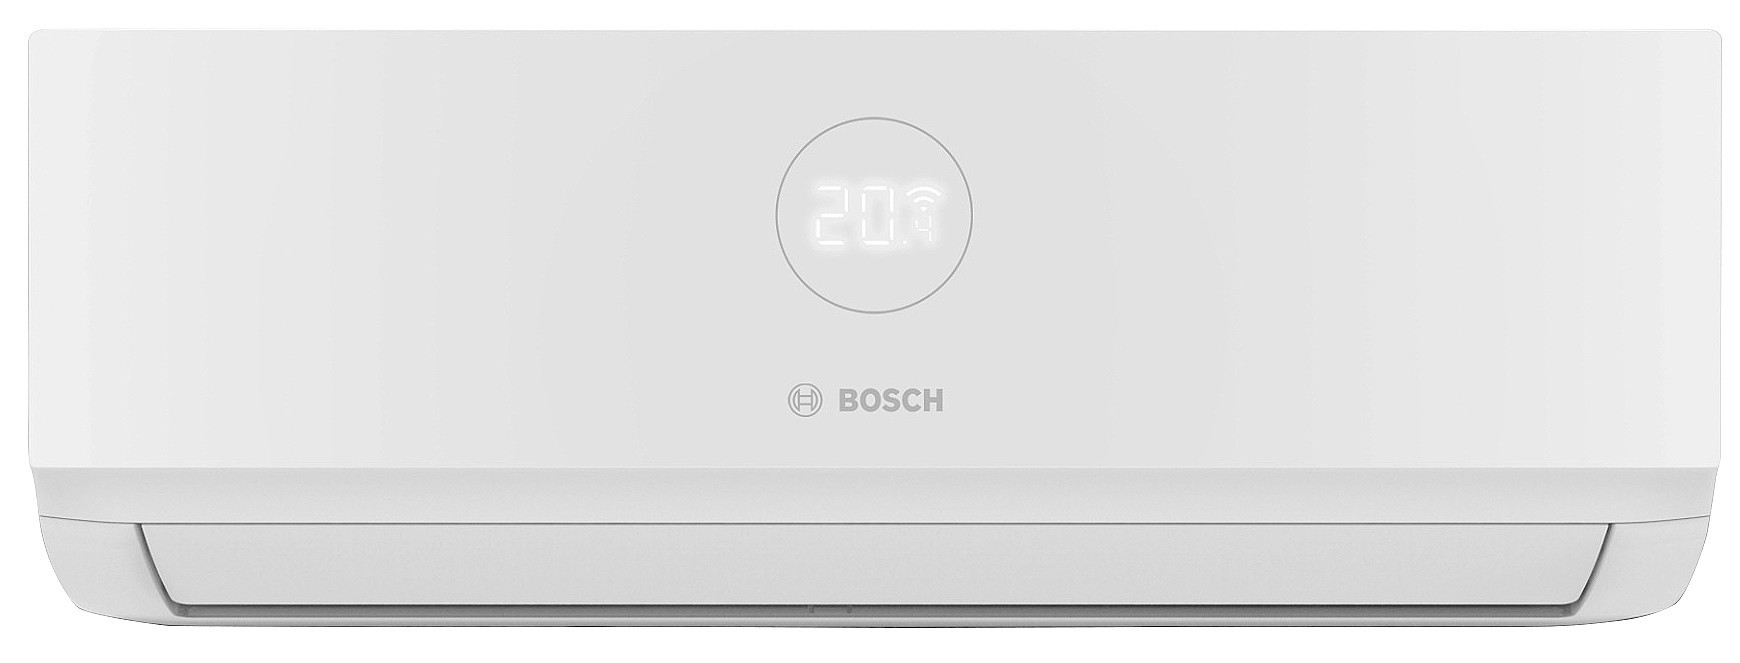 Внутренний блок мультисплит-системы Bosch CL3000iU W 70 E, 7,0 кВт в интернет-магазине, главное фото